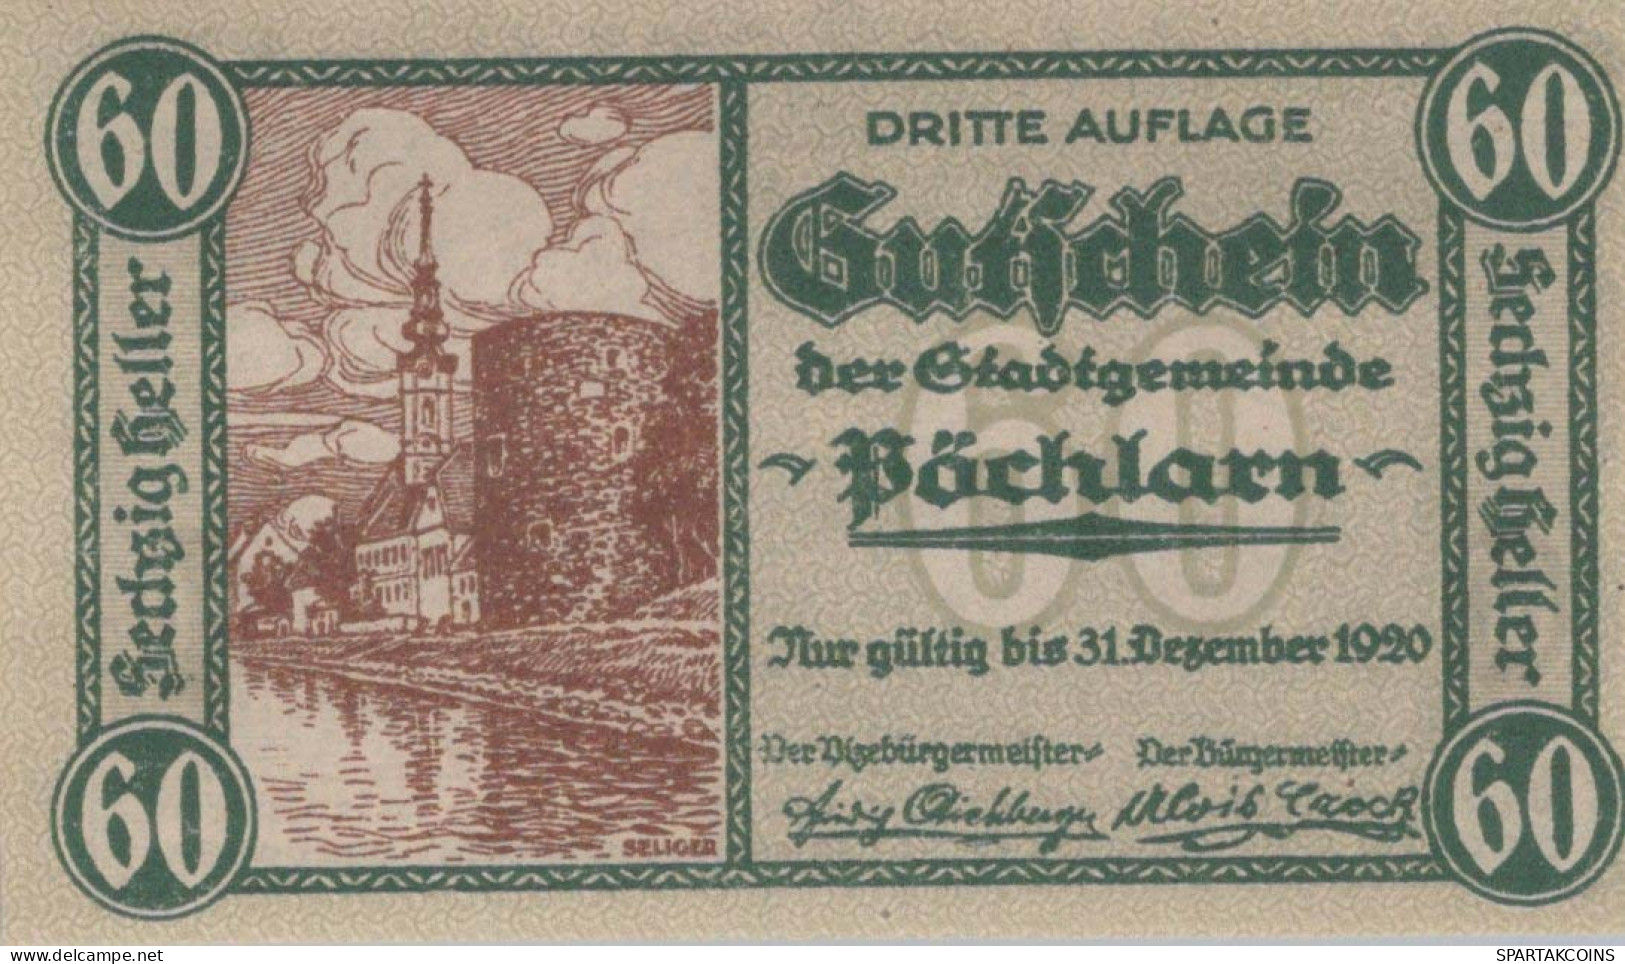 60 HELLER 1920 Stadt PÖCHLARN Niedrigeren Österreich Notgeld Papiergeld Banknote #PG647 - [11] Emisiones Locales